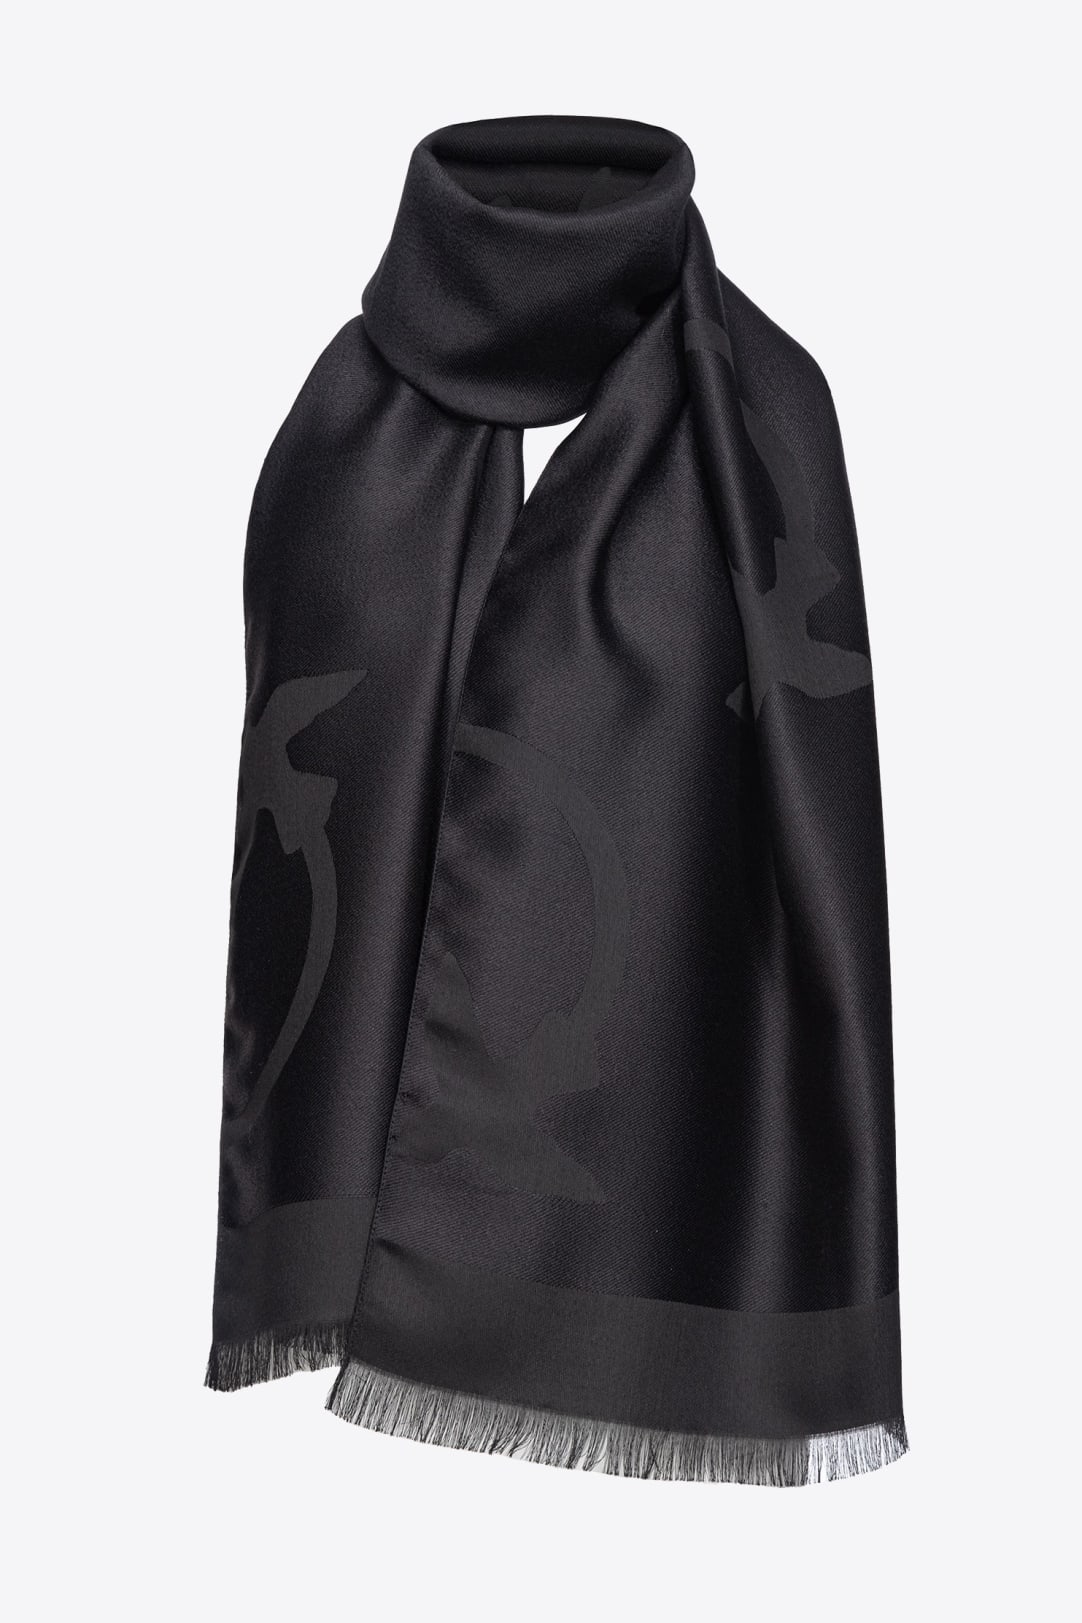 Cashmere beanie Louis Vuitton Black size M International in